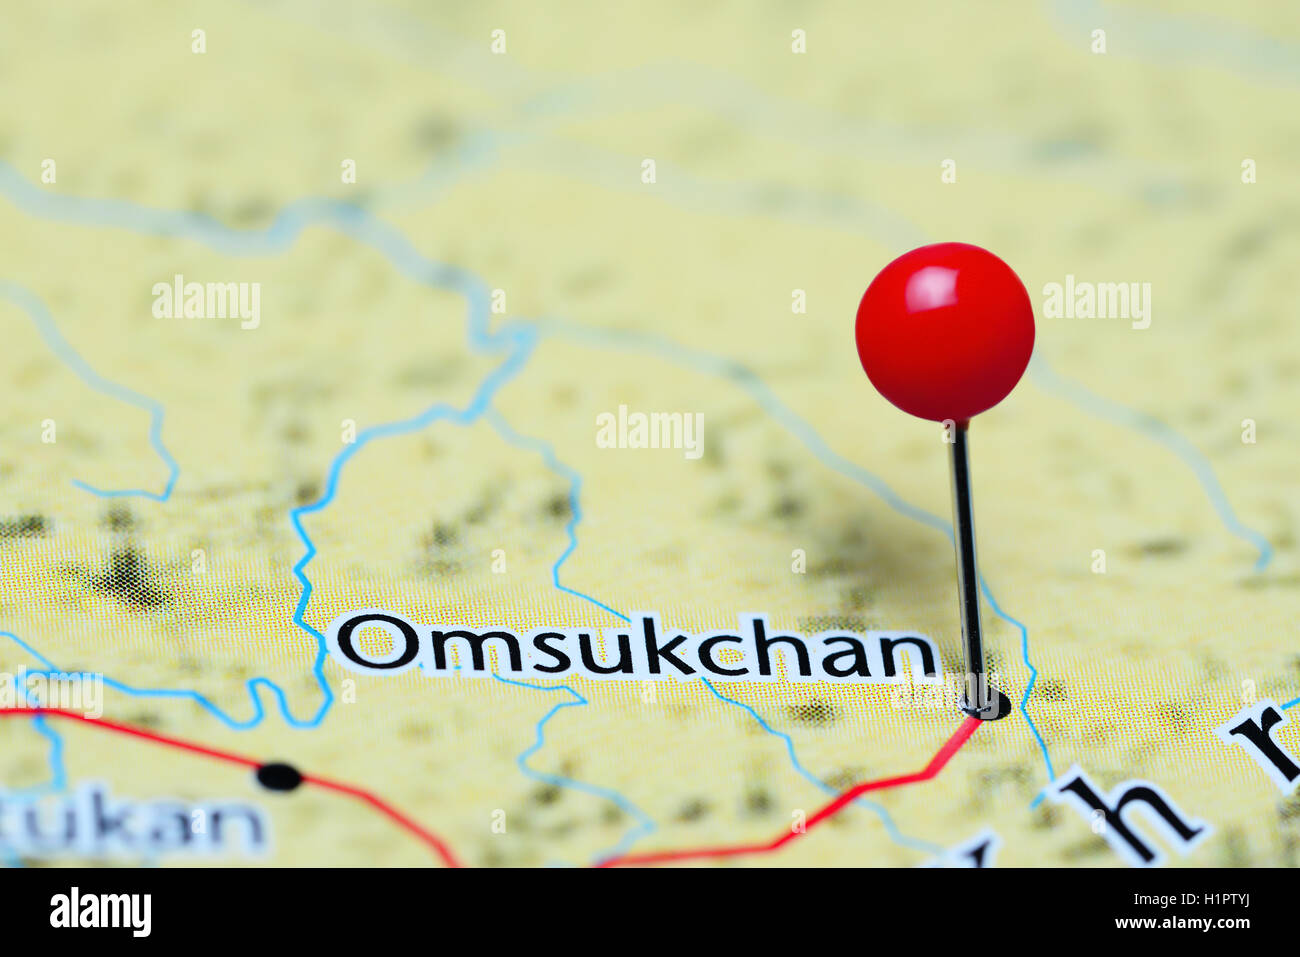 Omsukchan épinglée sur une carte de la Russie Banque D'Images